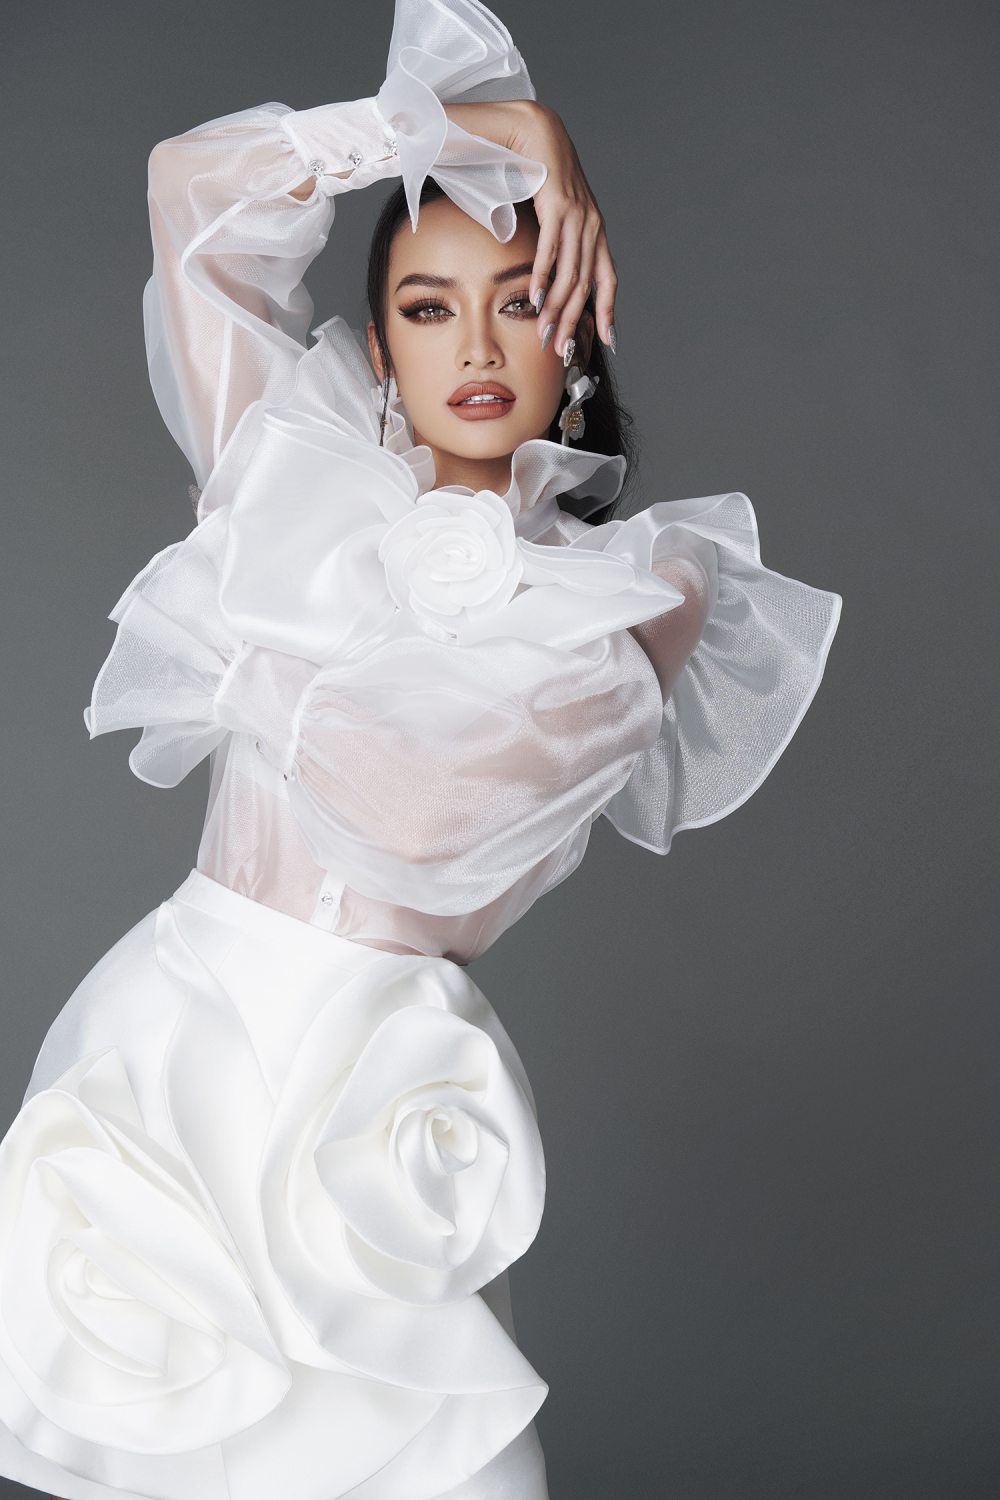 Hoa hậu Ngọc Châu thanh lịch trong sắc trắng - ảnh 5